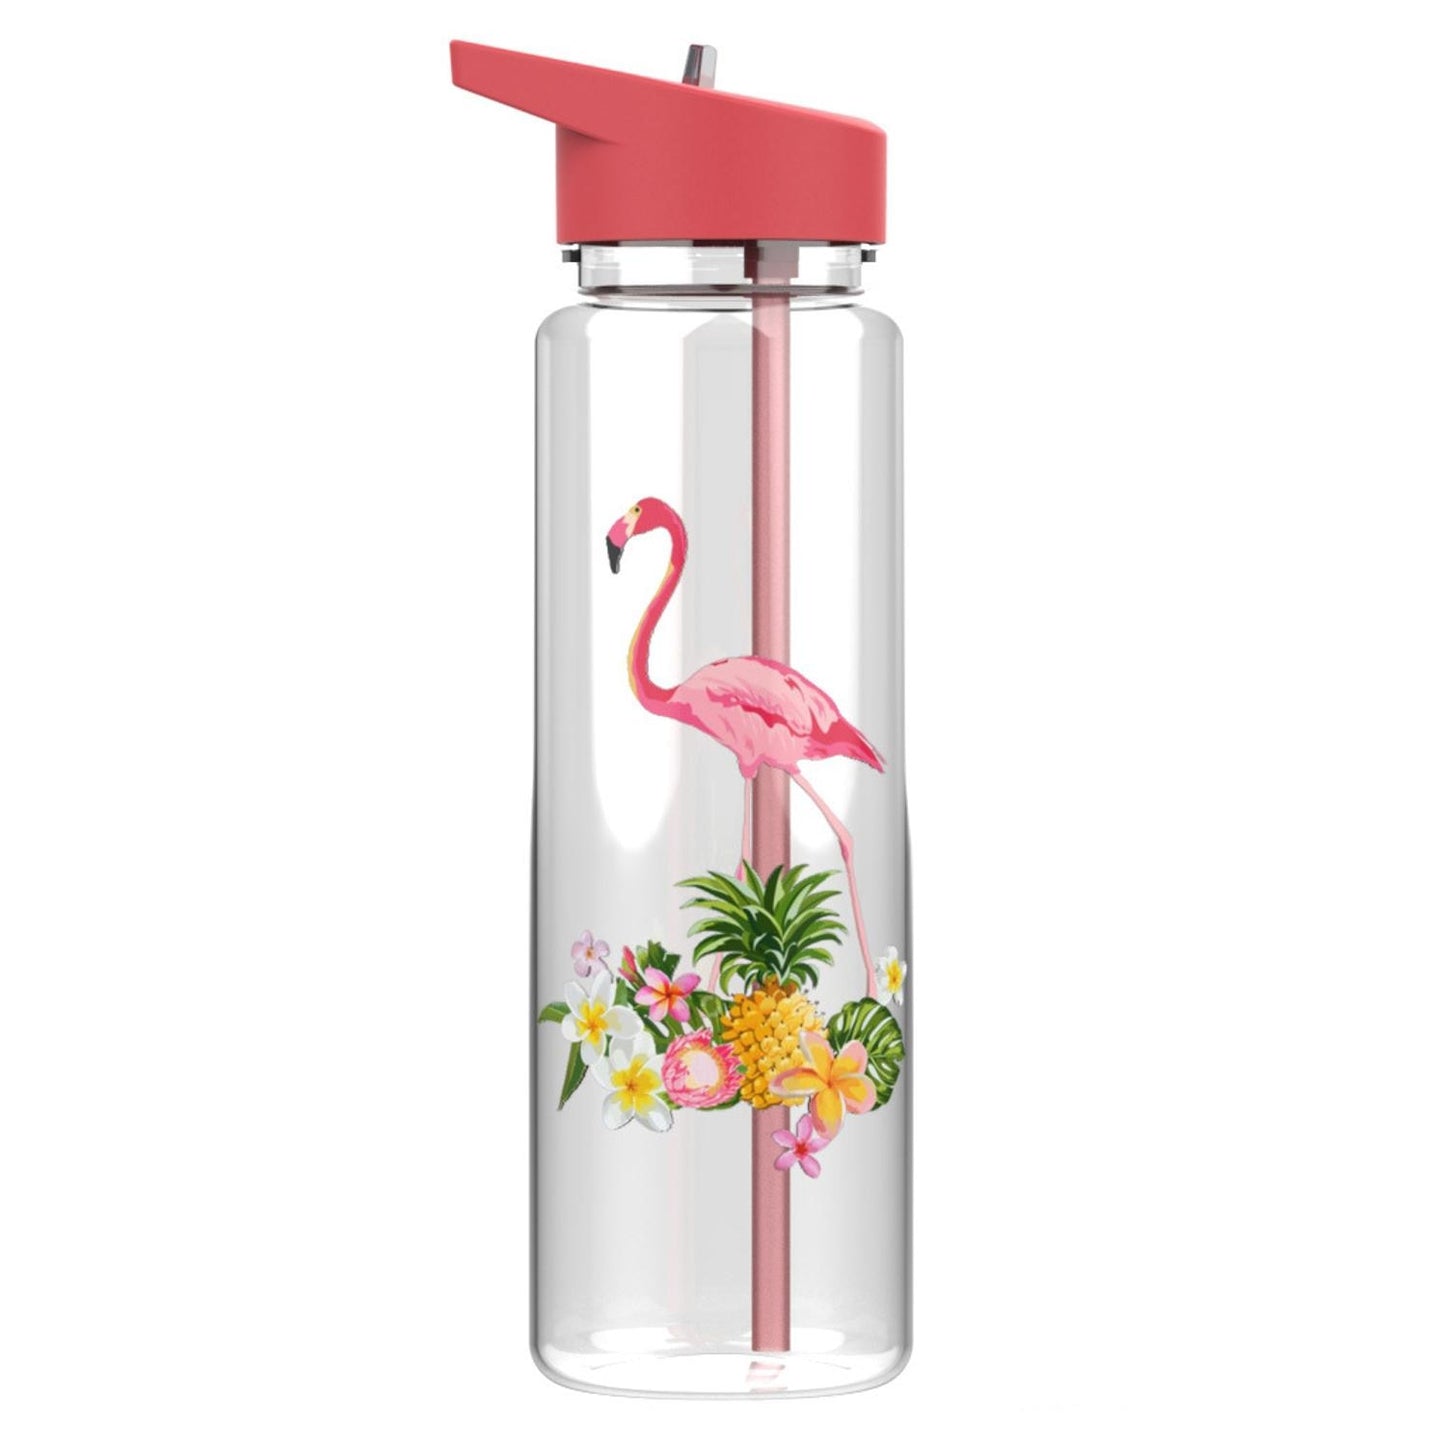 Eine transparente Kindertrinkflasche mit einem rotem Deckel und einem Flamingo-Design, umgeben von tropischen Pflanzen.